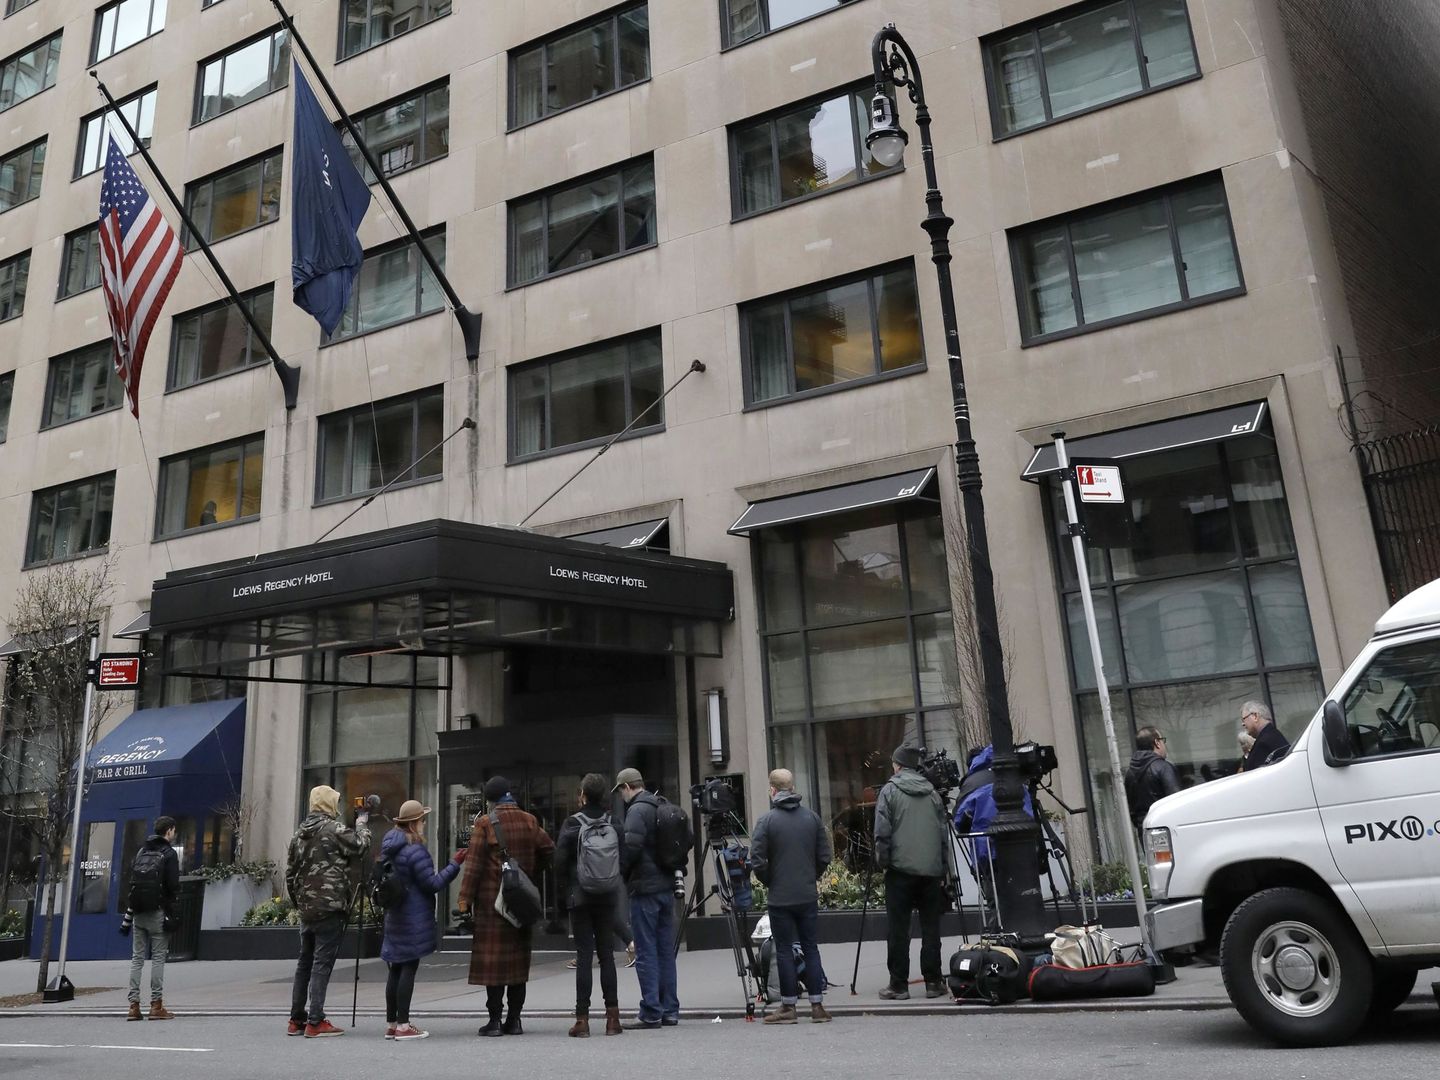 Reporteros esperan frente al Loews Regency Hotel, la residencia de Michael Cohen, en Nueva York, tras la redada del FBI el lunes. (EFE)